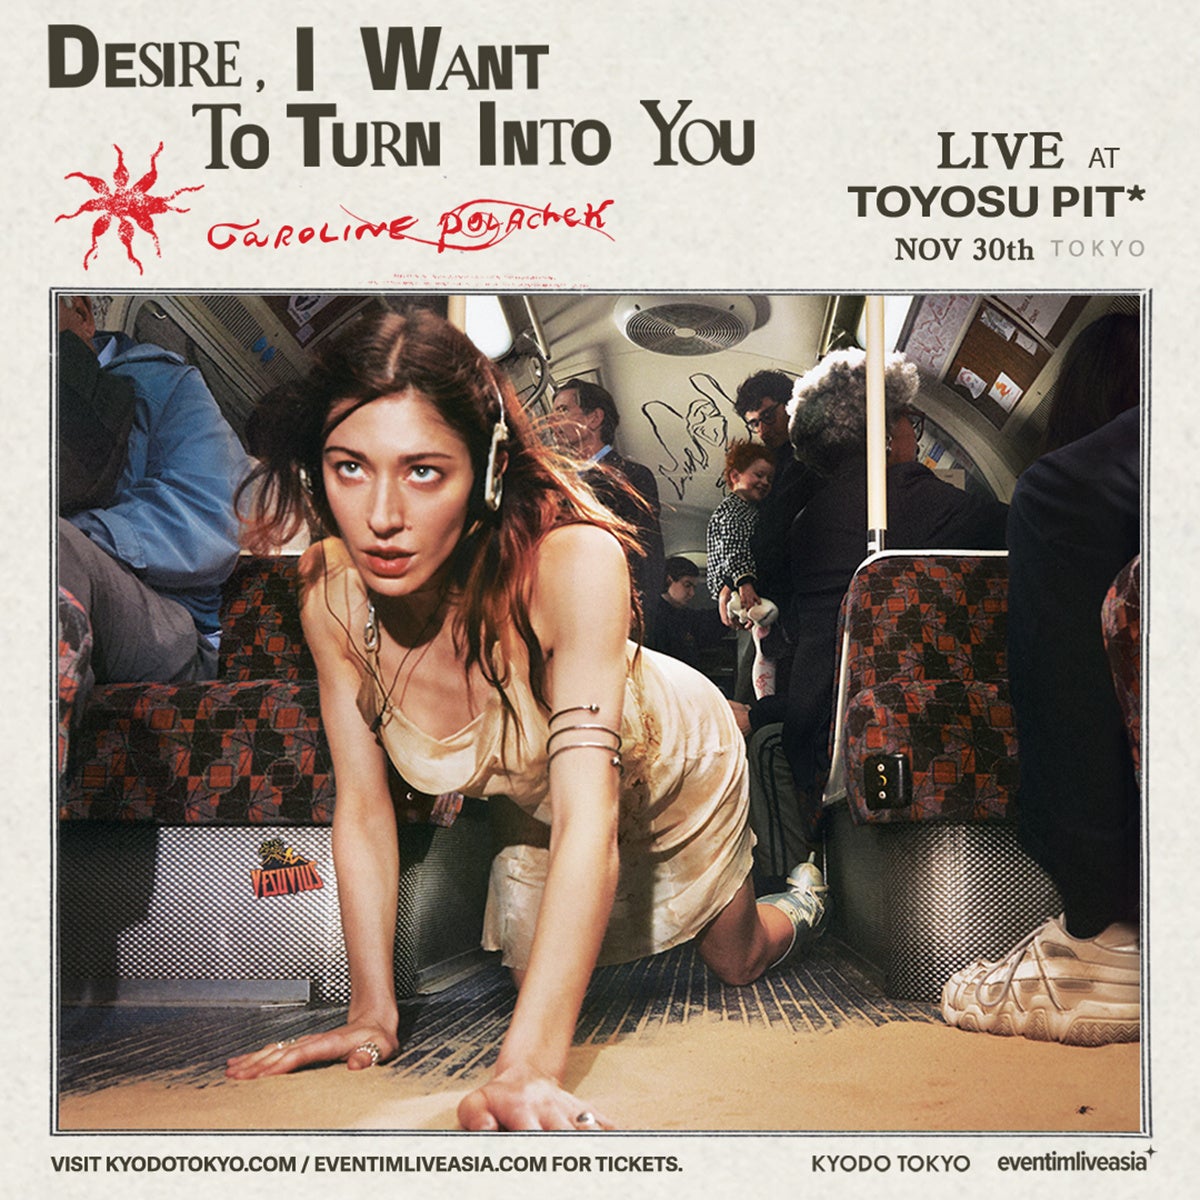 2023年を代表するアルバムの1枚として大絶賛のキャロライン・ポラチェック『Desire, I Want To Turn Into You』が遂にLP化！のサブ画像2